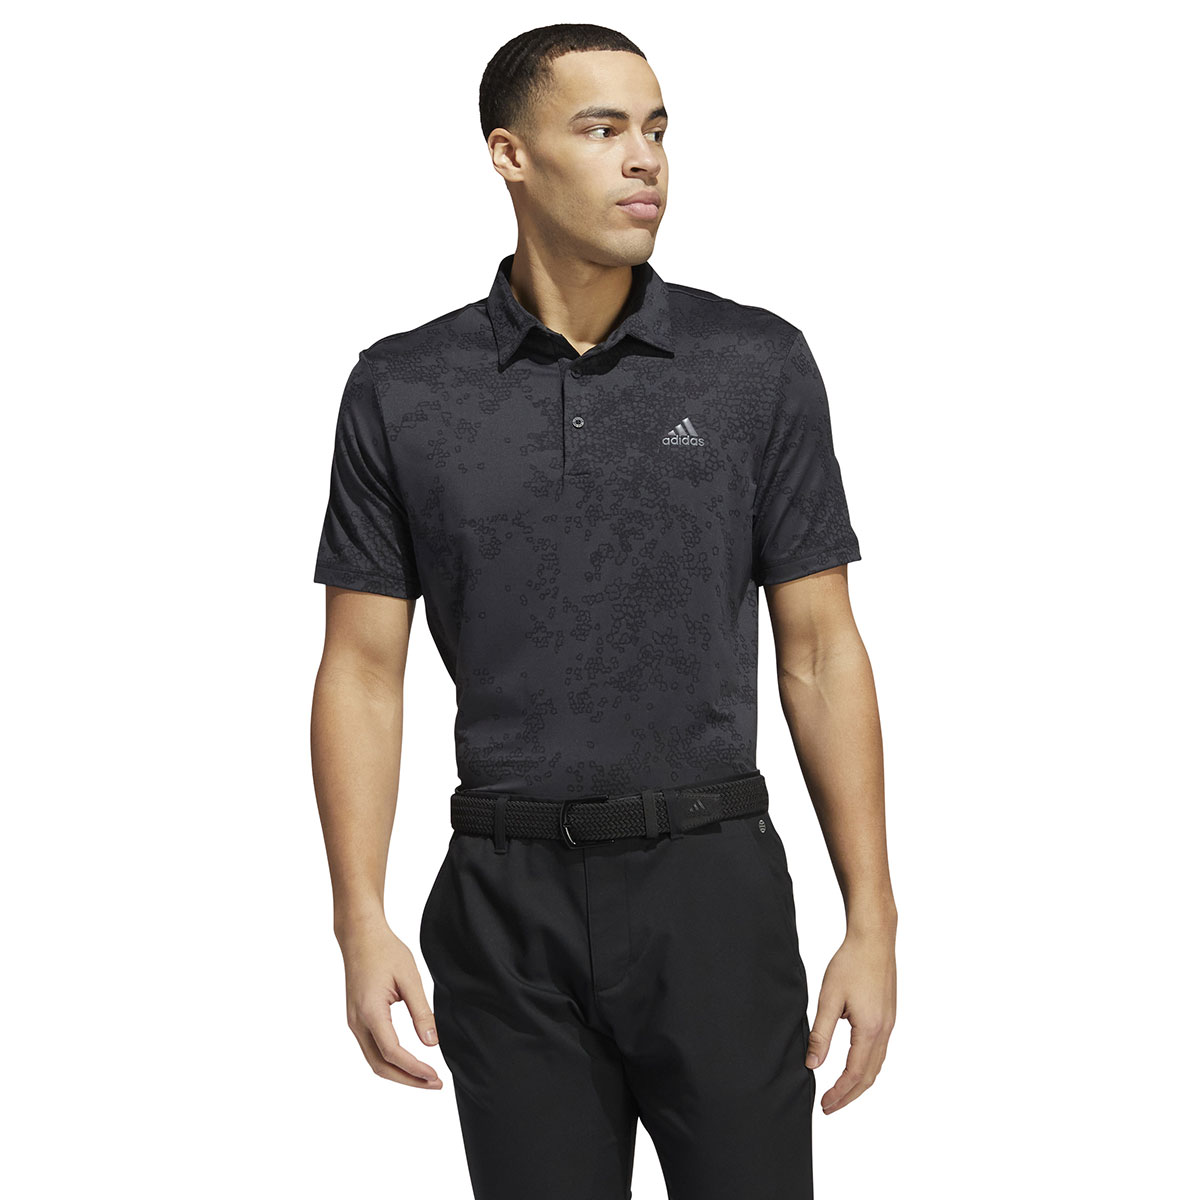 adidas Men’s Jacquard Stretch Golf Polo Shirt